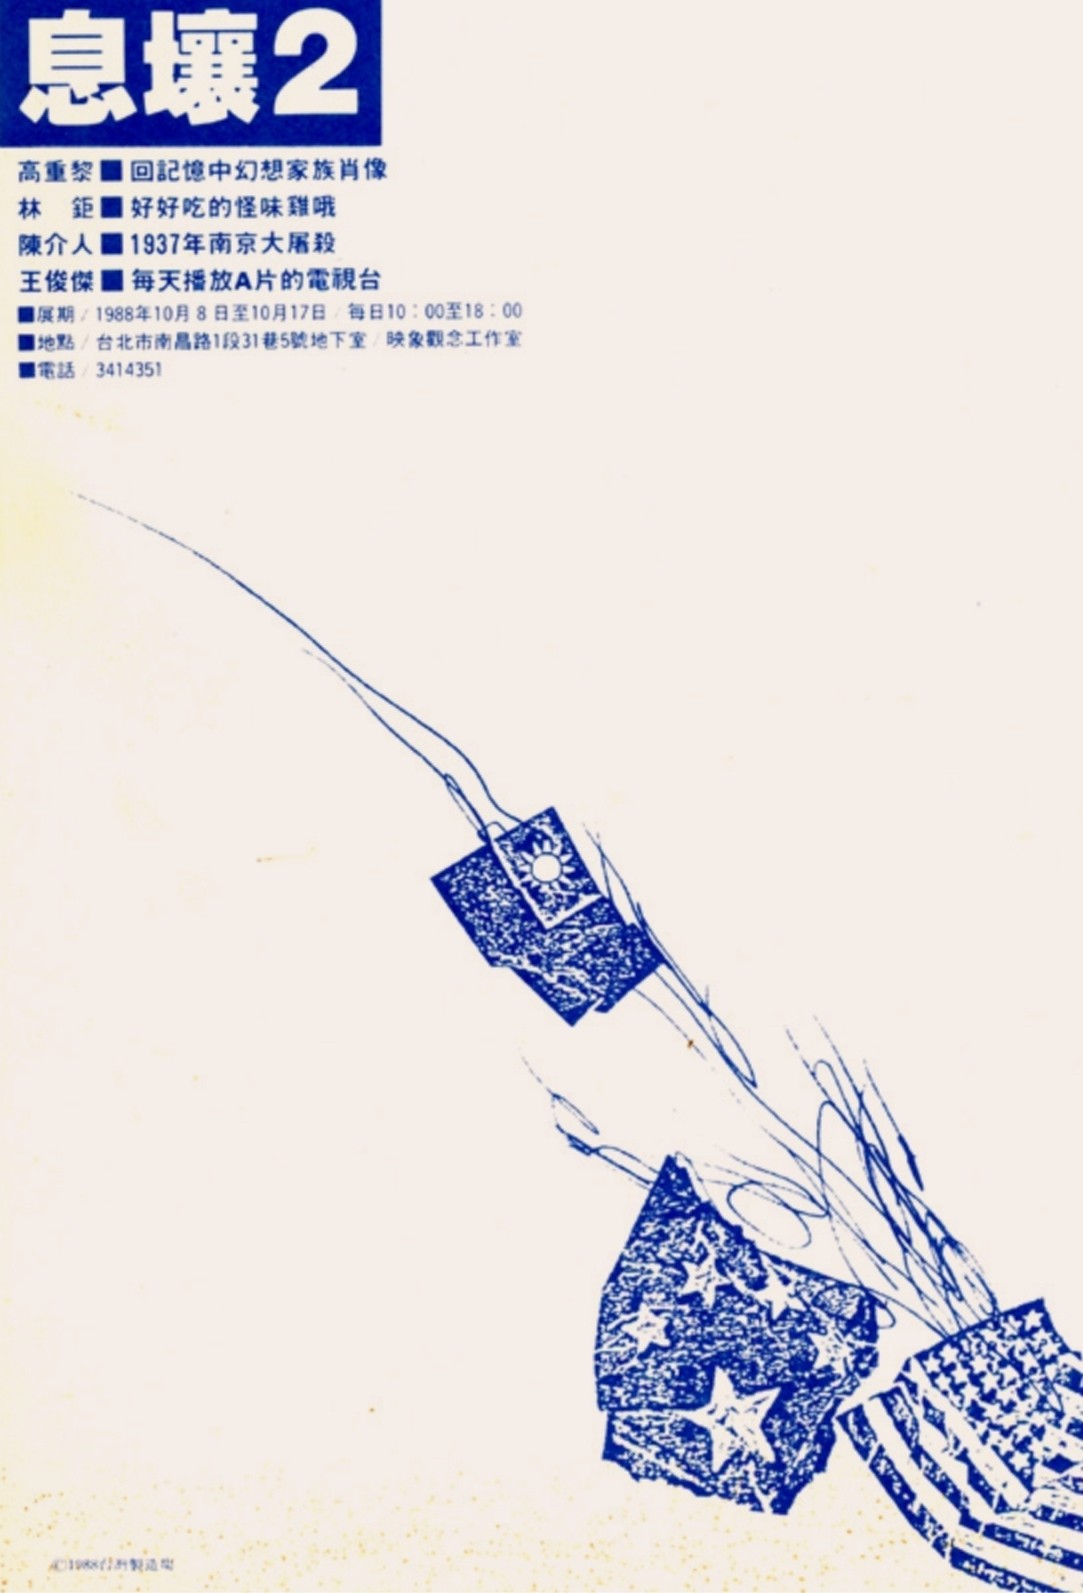 「息壤2」展覽文宣，1988；王俊傑設計、提供-圖片